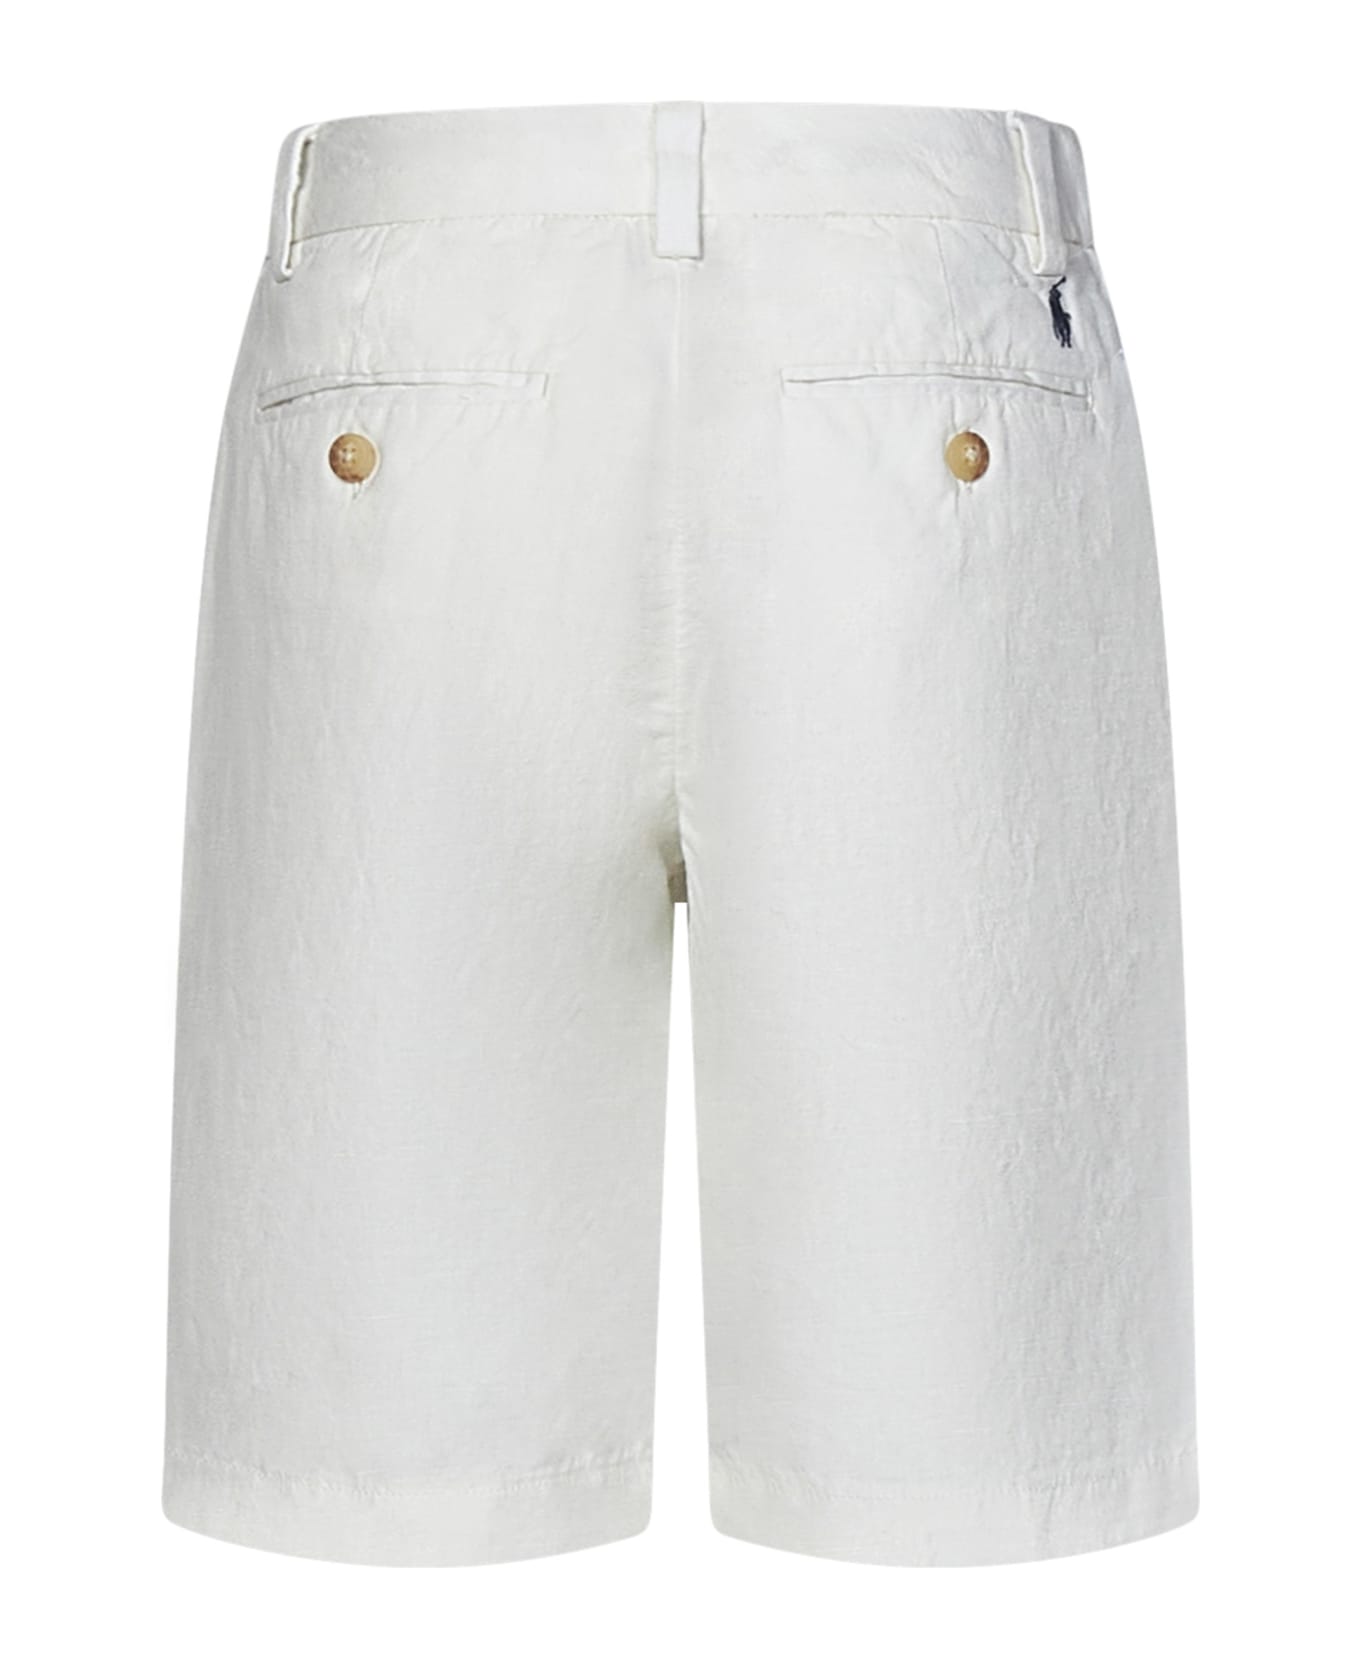 Polo Ralph Lauren Kids Shorts - White